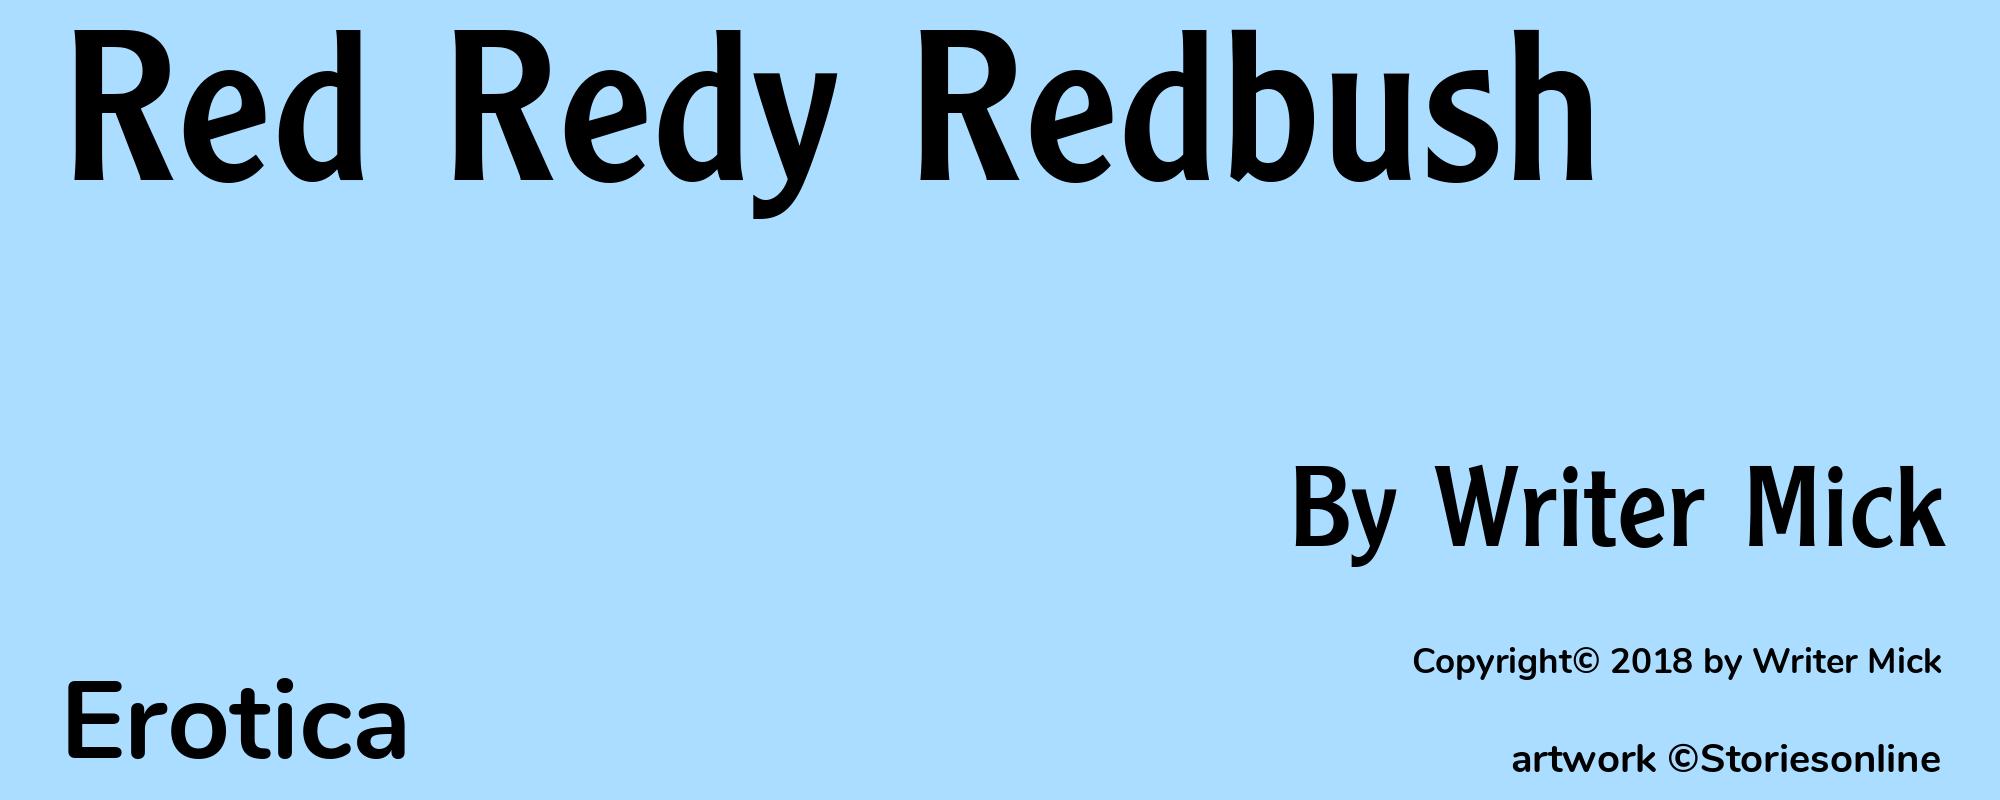 Red Redy Redbush - Cover